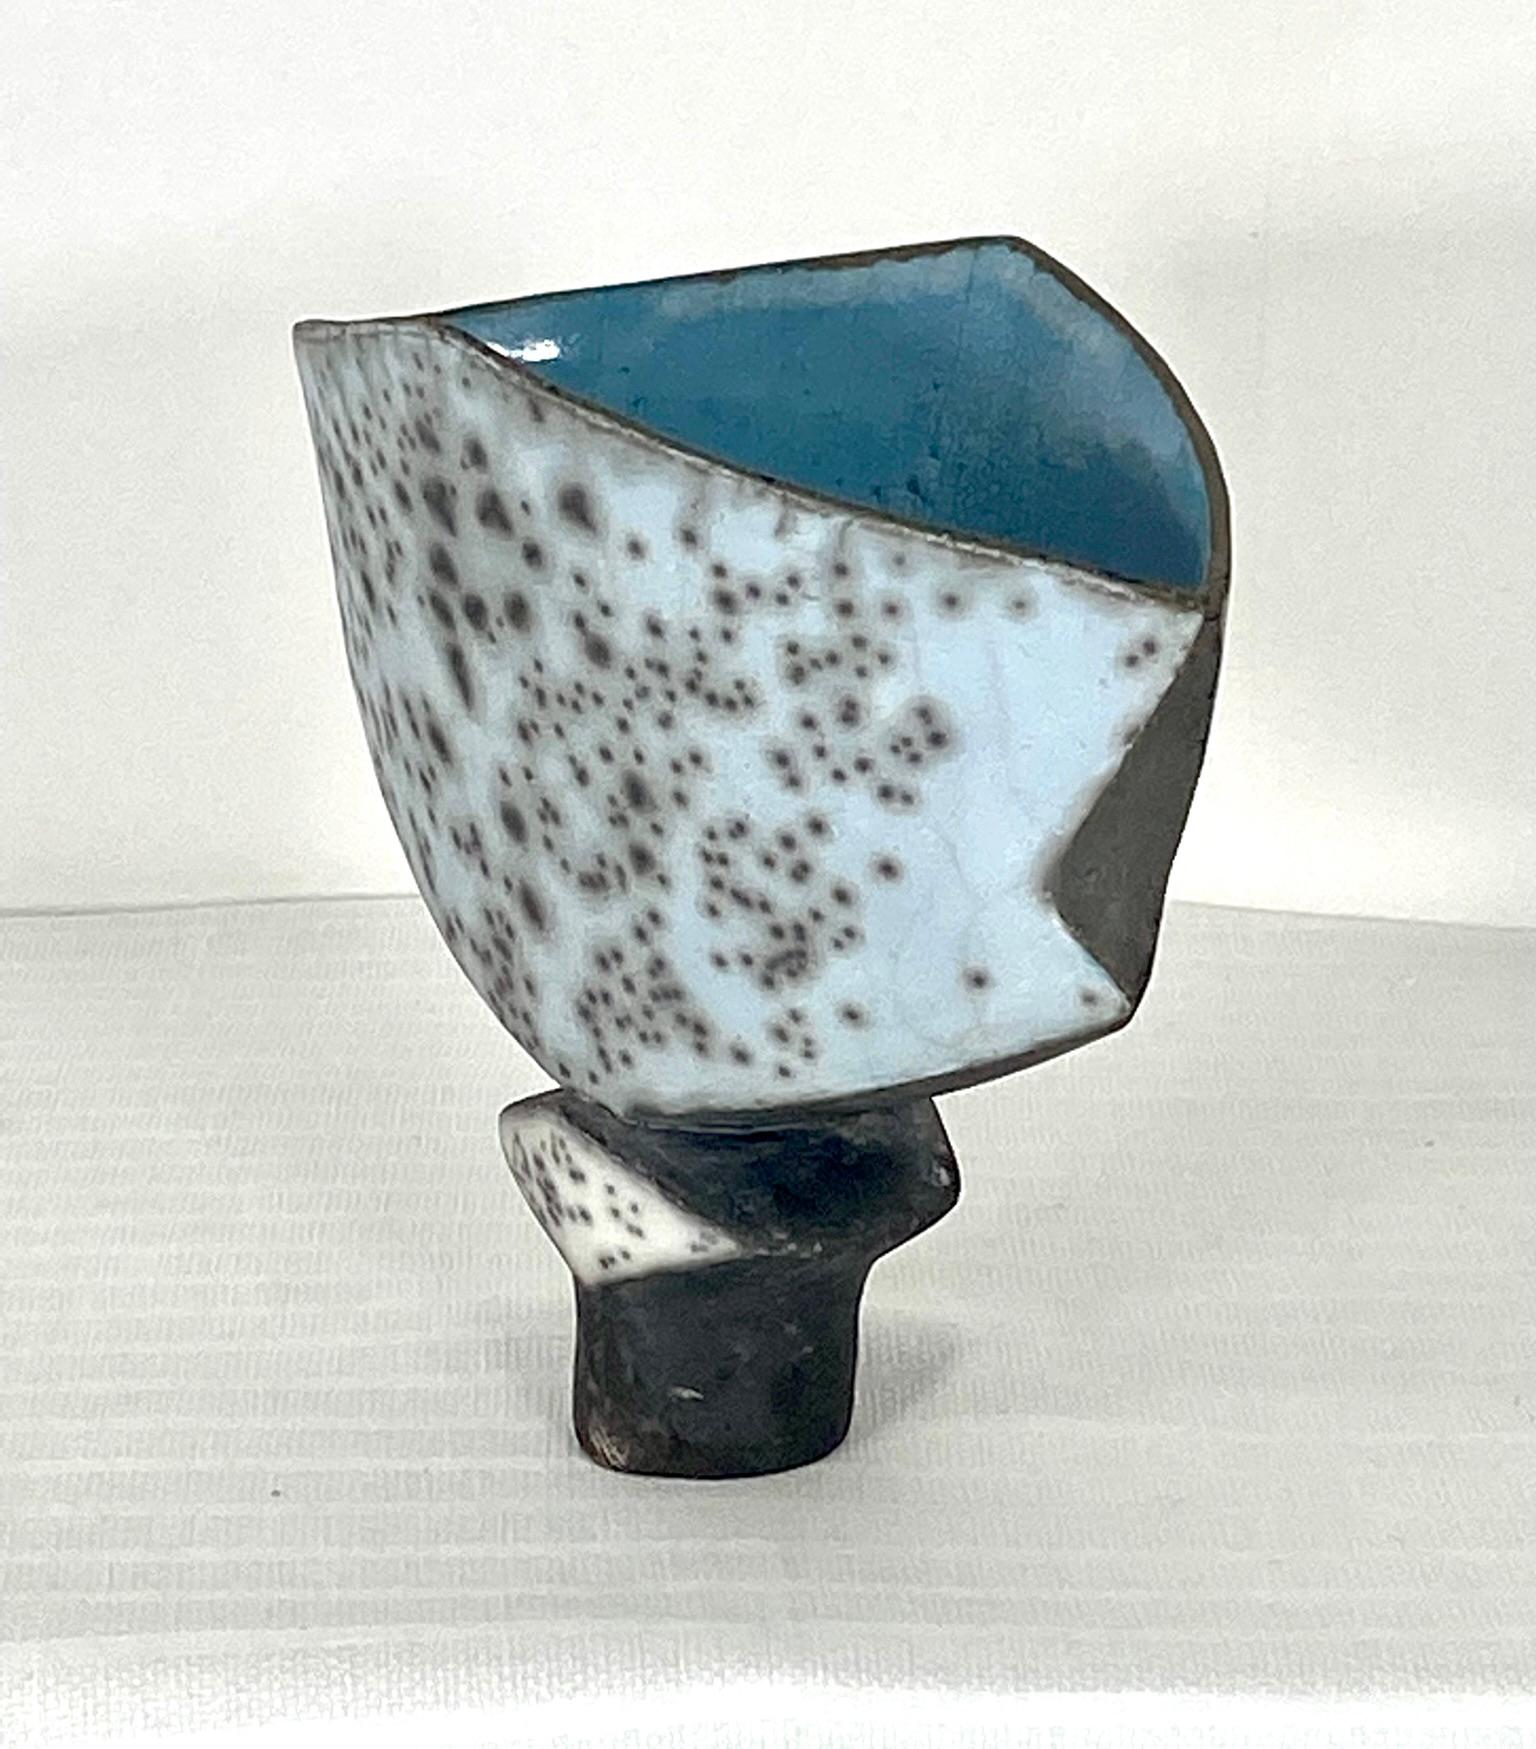 Vase sculptural de la potière britannique Elizabeth Raeburn. Vase en poterie d'art de Studio à glaçure bleue Ruku abstraite. Mesures : 9 pouces de largeur, 5 pouces de profondeur et 8 pouces de hauteur.